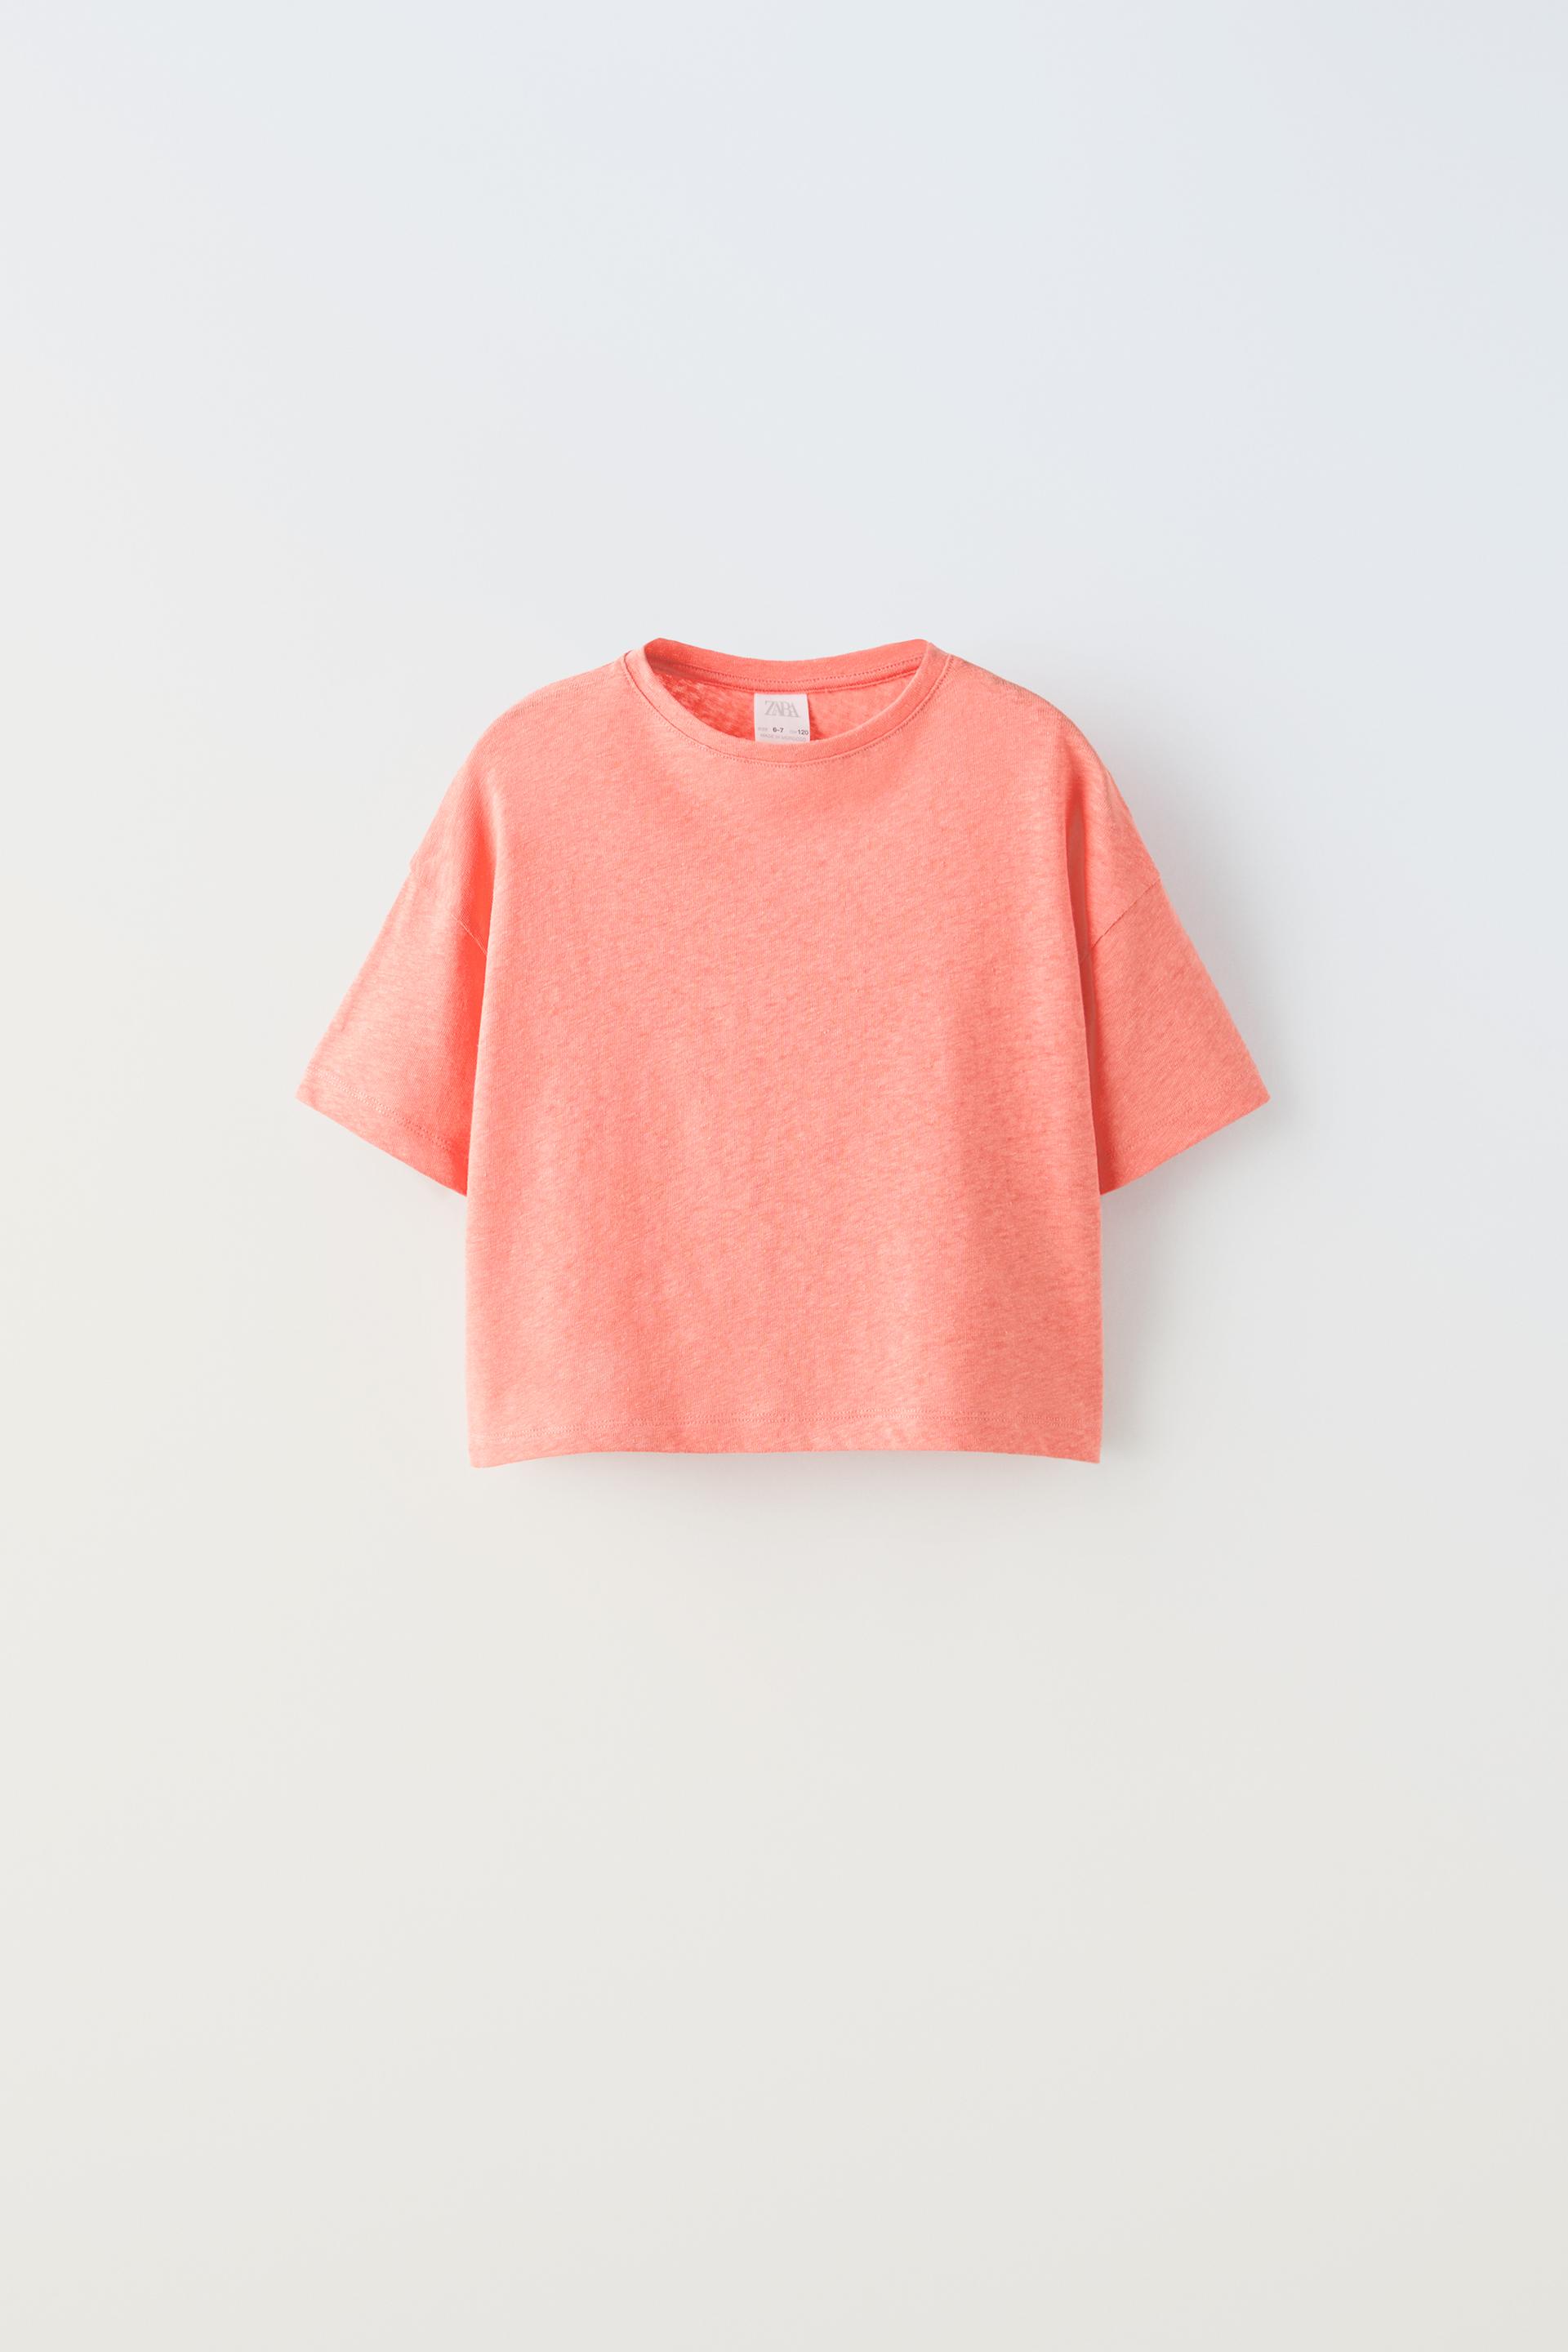 Футболка Zara With Cotton And Linen, розовый футболка laredoute футболка из льна с круглым вырезом и короткими рукавами l белый